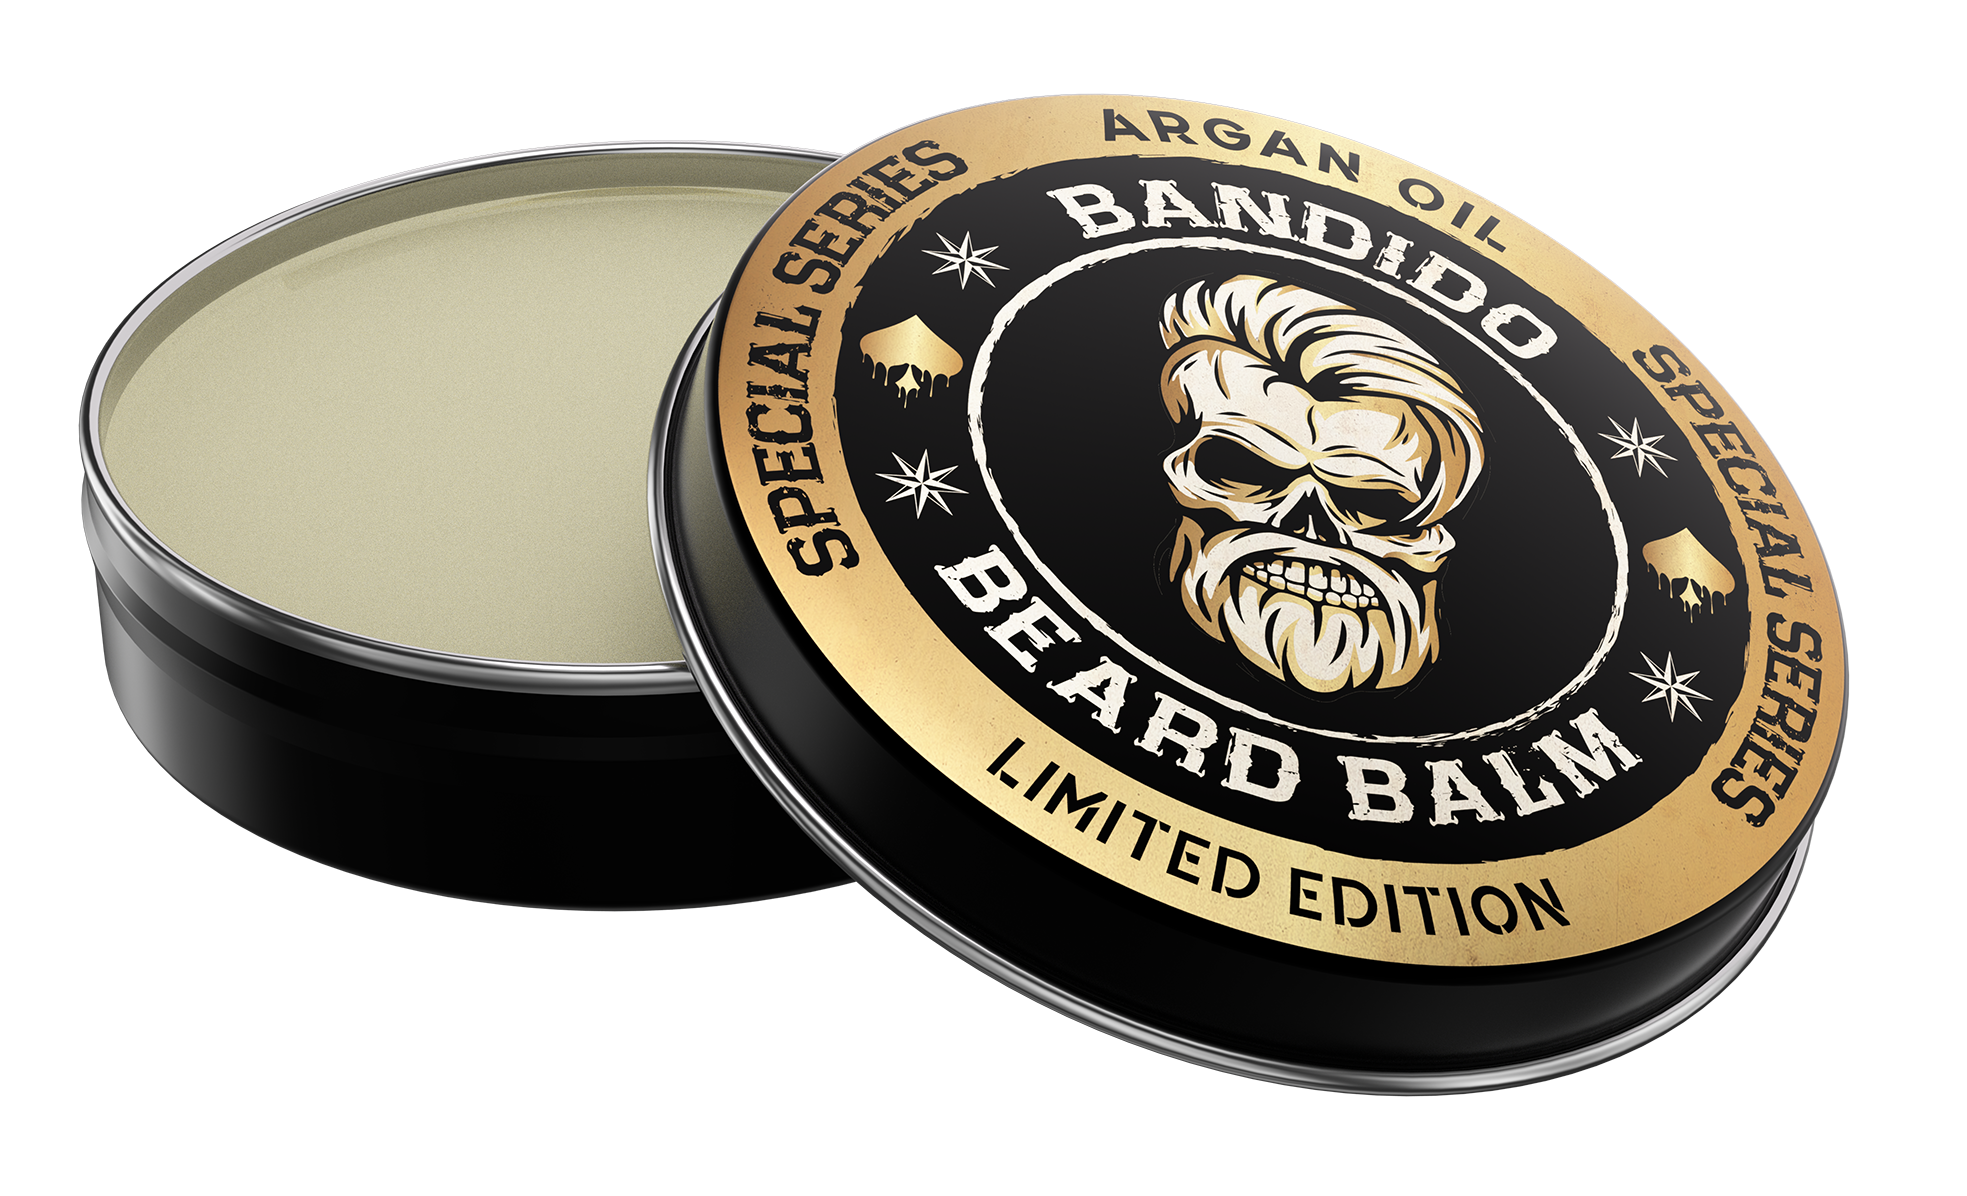 Bandido Beard Balm Argan Oil Limited Edition 40ml/1.35fl oz